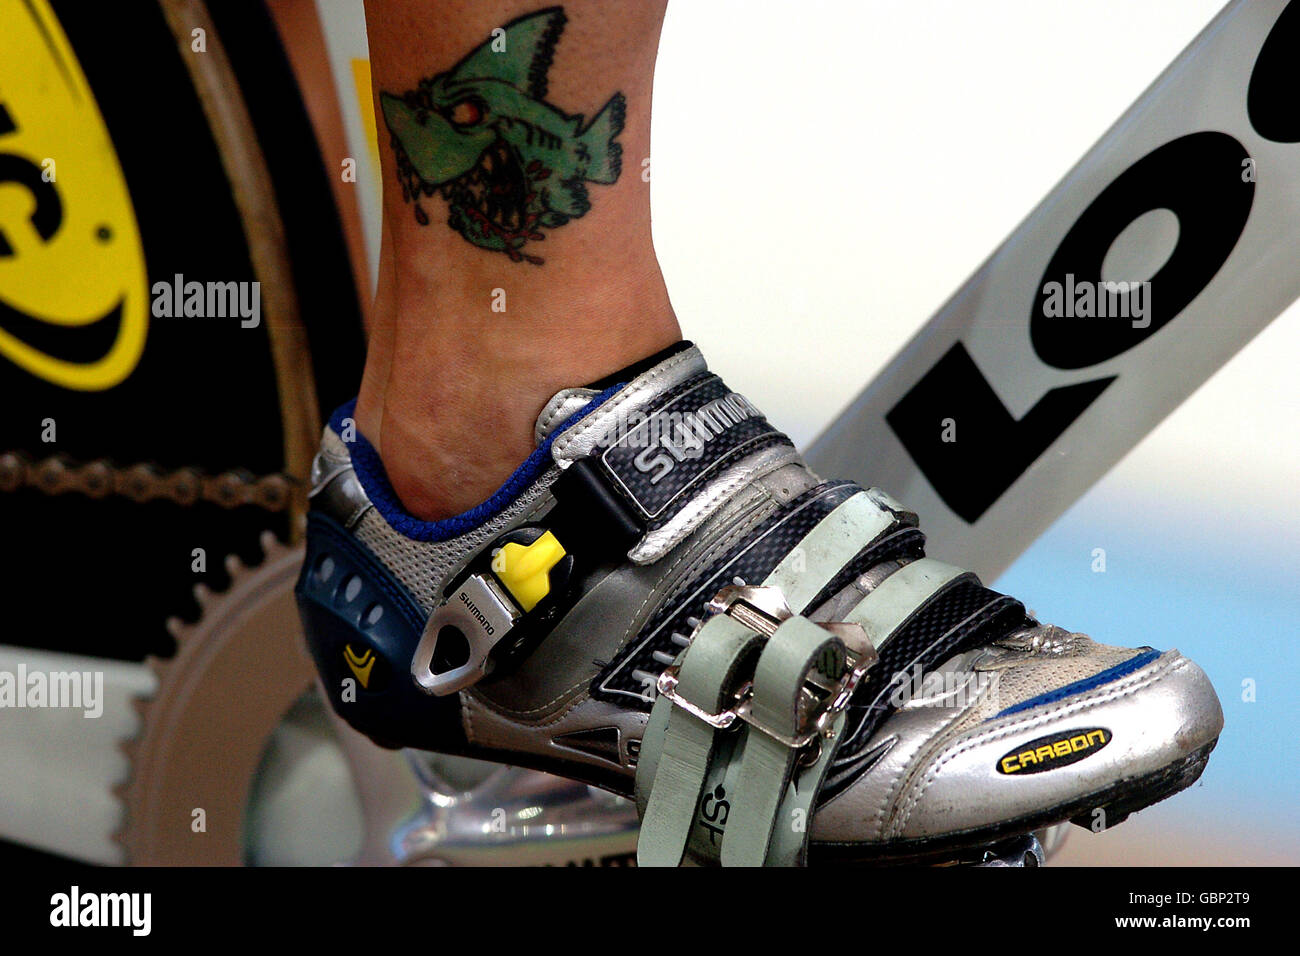 Cyclisme - Jeux Olympiques d'Athènes 2004 - Sprint hommes - quart de finale. Un tatouage sur la cheville de Ross Edgar en Grande-Bretagne Banque D'Images